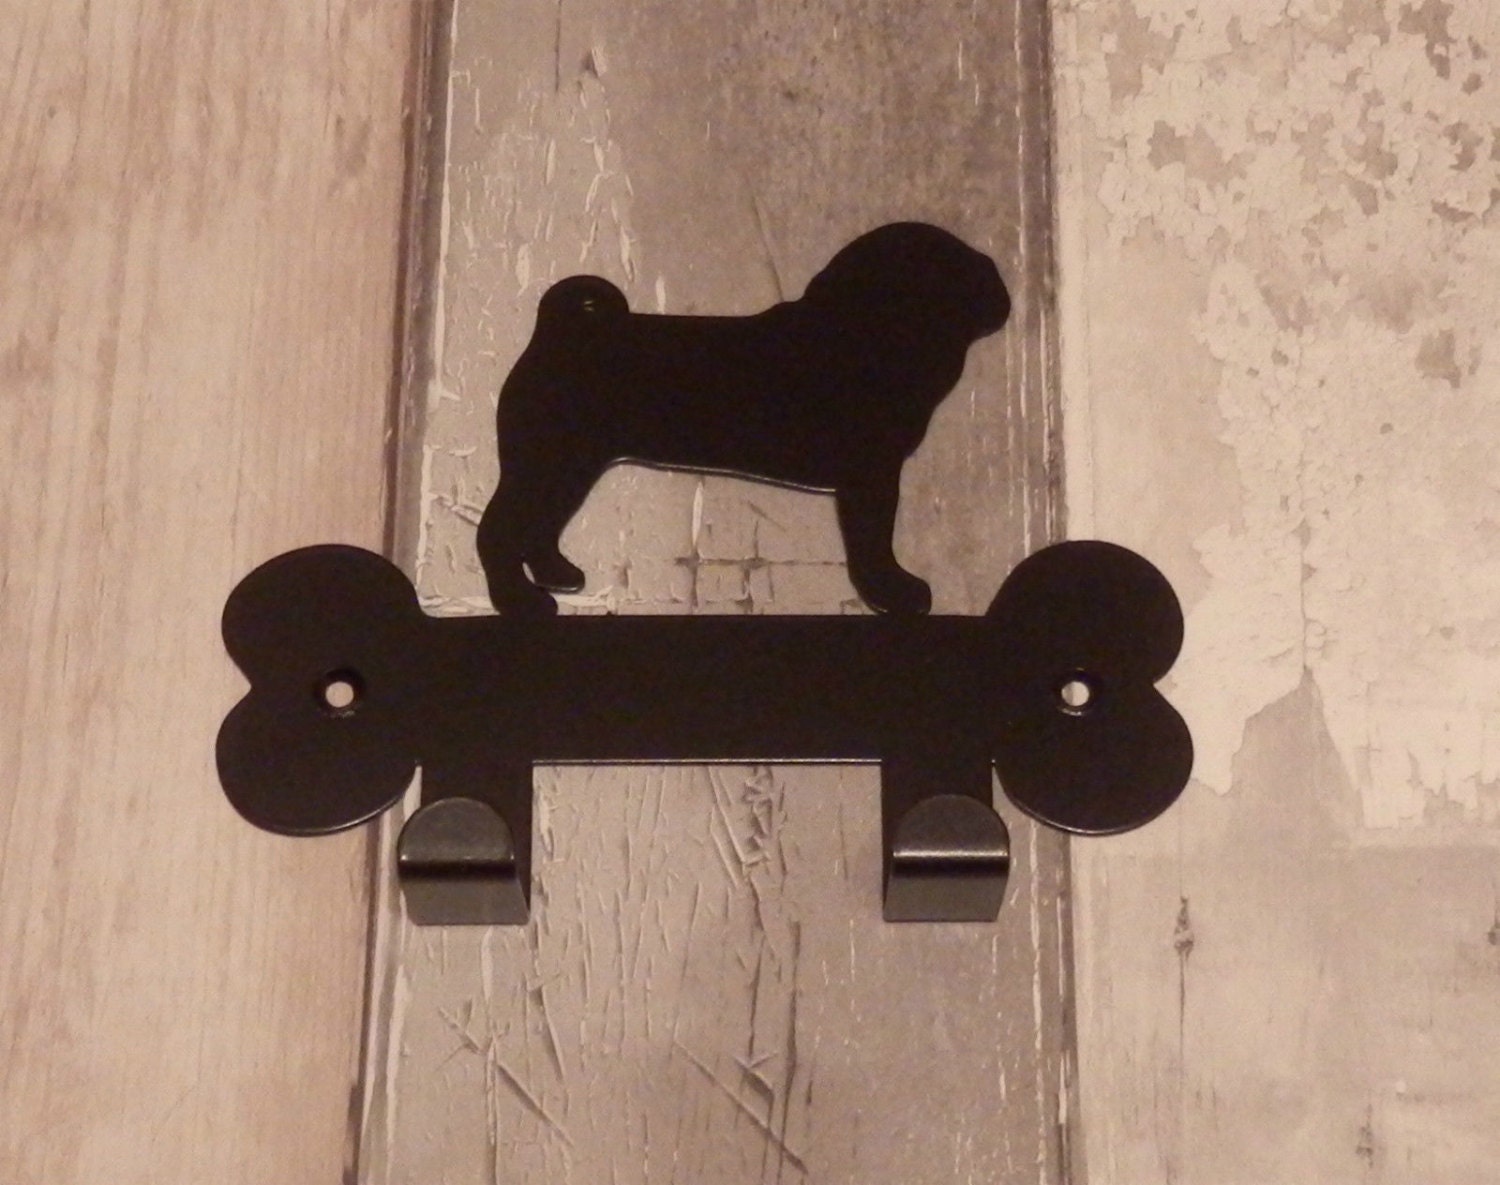  13 diseños de madera de grabado láser Pug perro Llaveros.última  intervensión 2 grabado personalizado Rectángulo.Madera llavero hecho de  madera real. : Productos para Animales